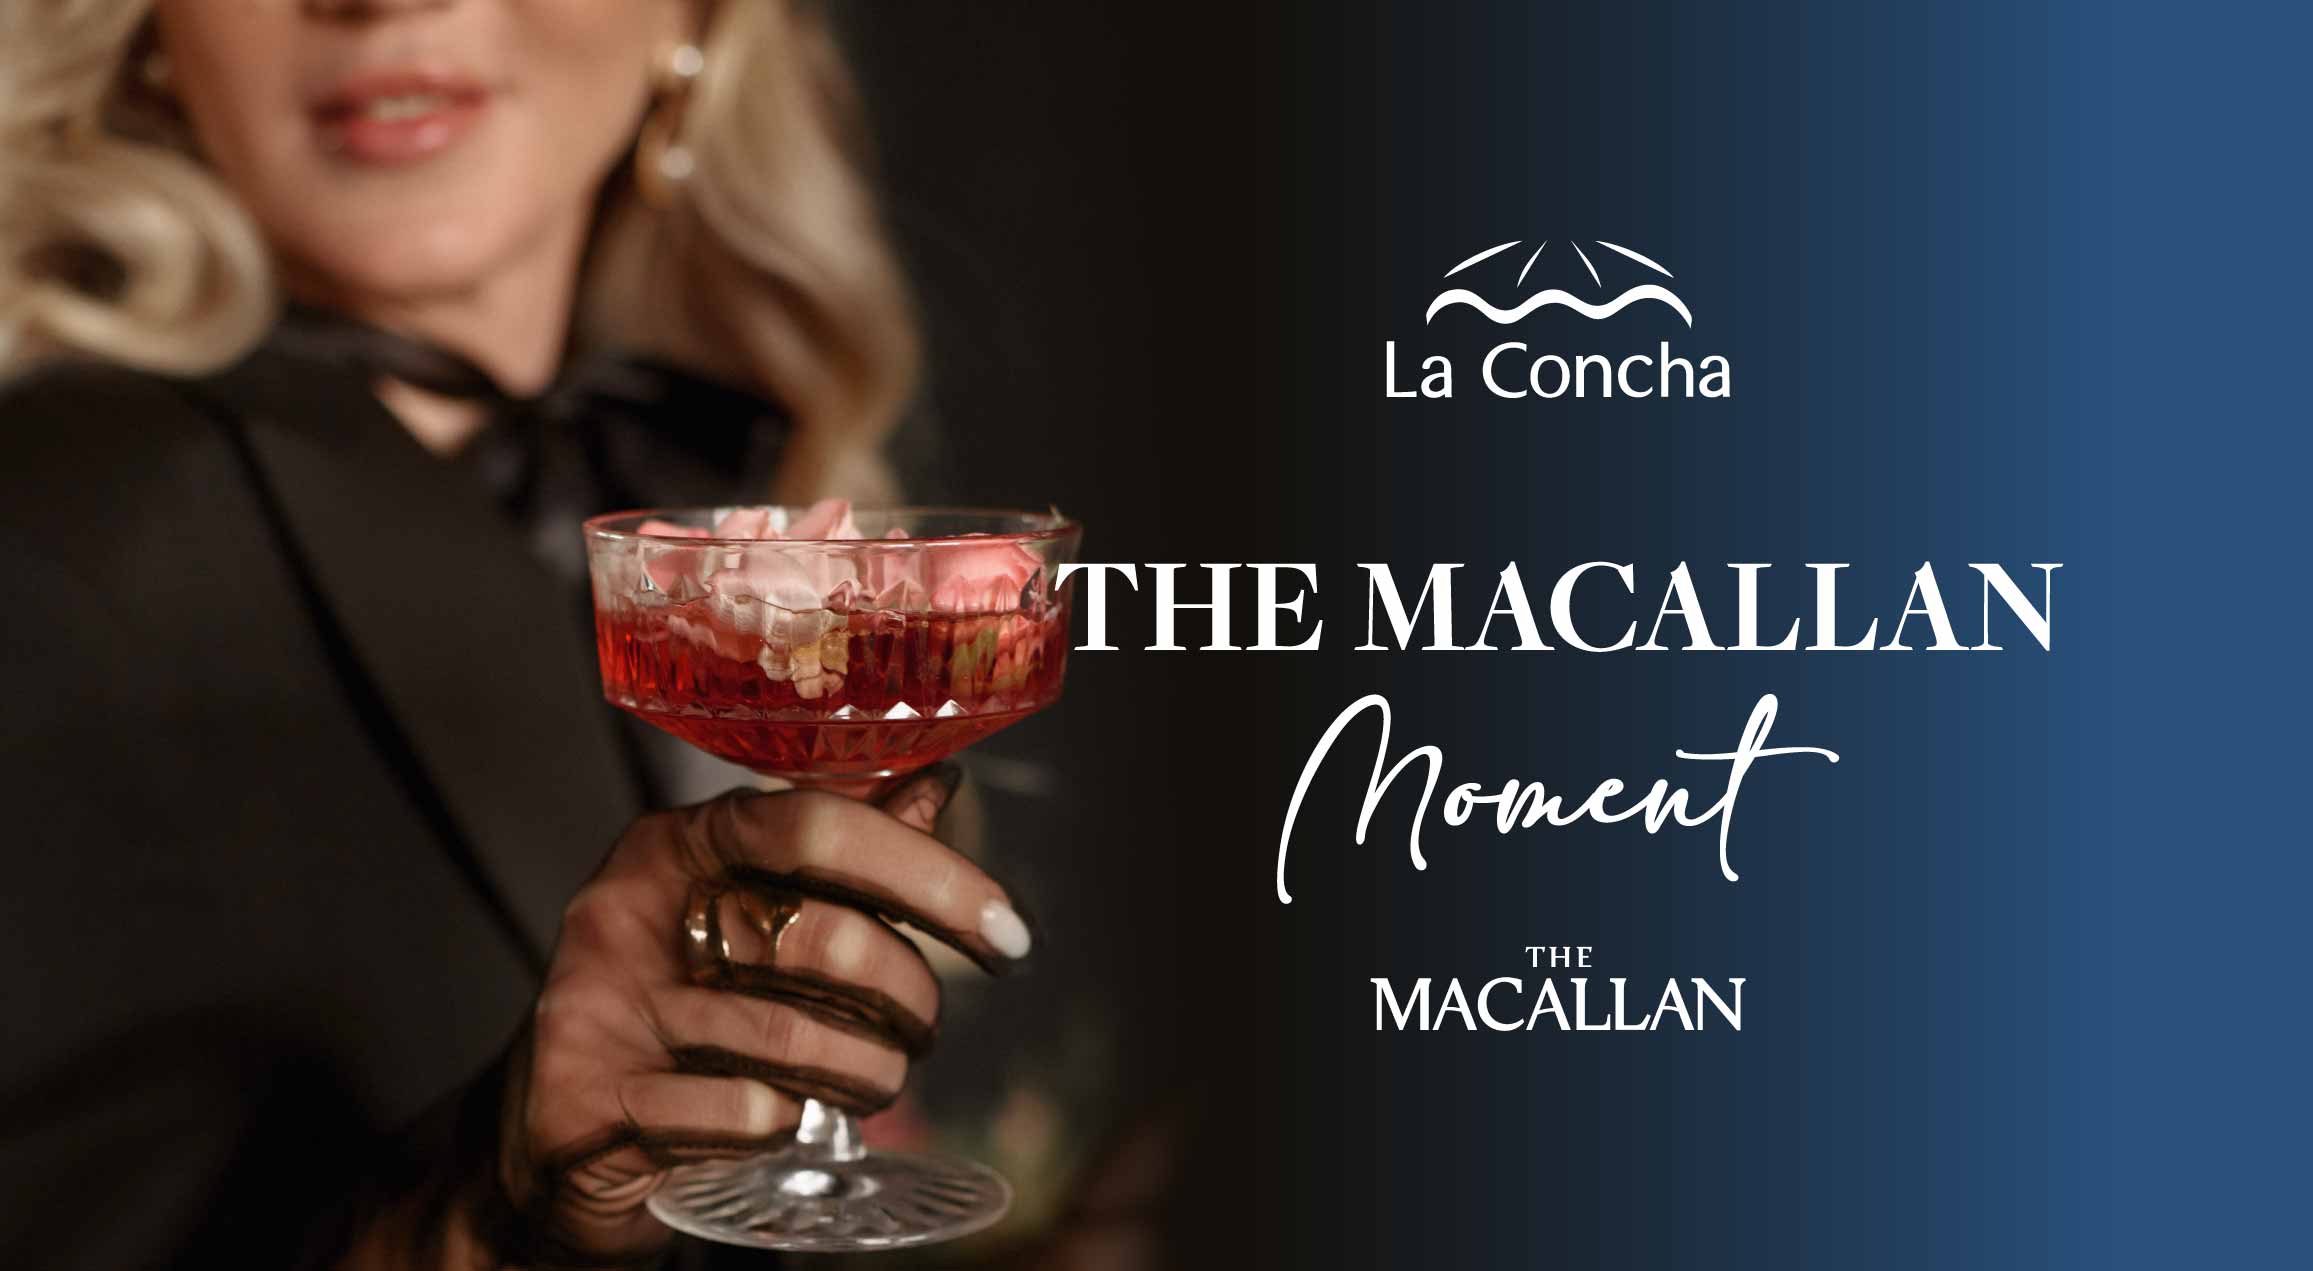 the macallan moment event at la concha resort